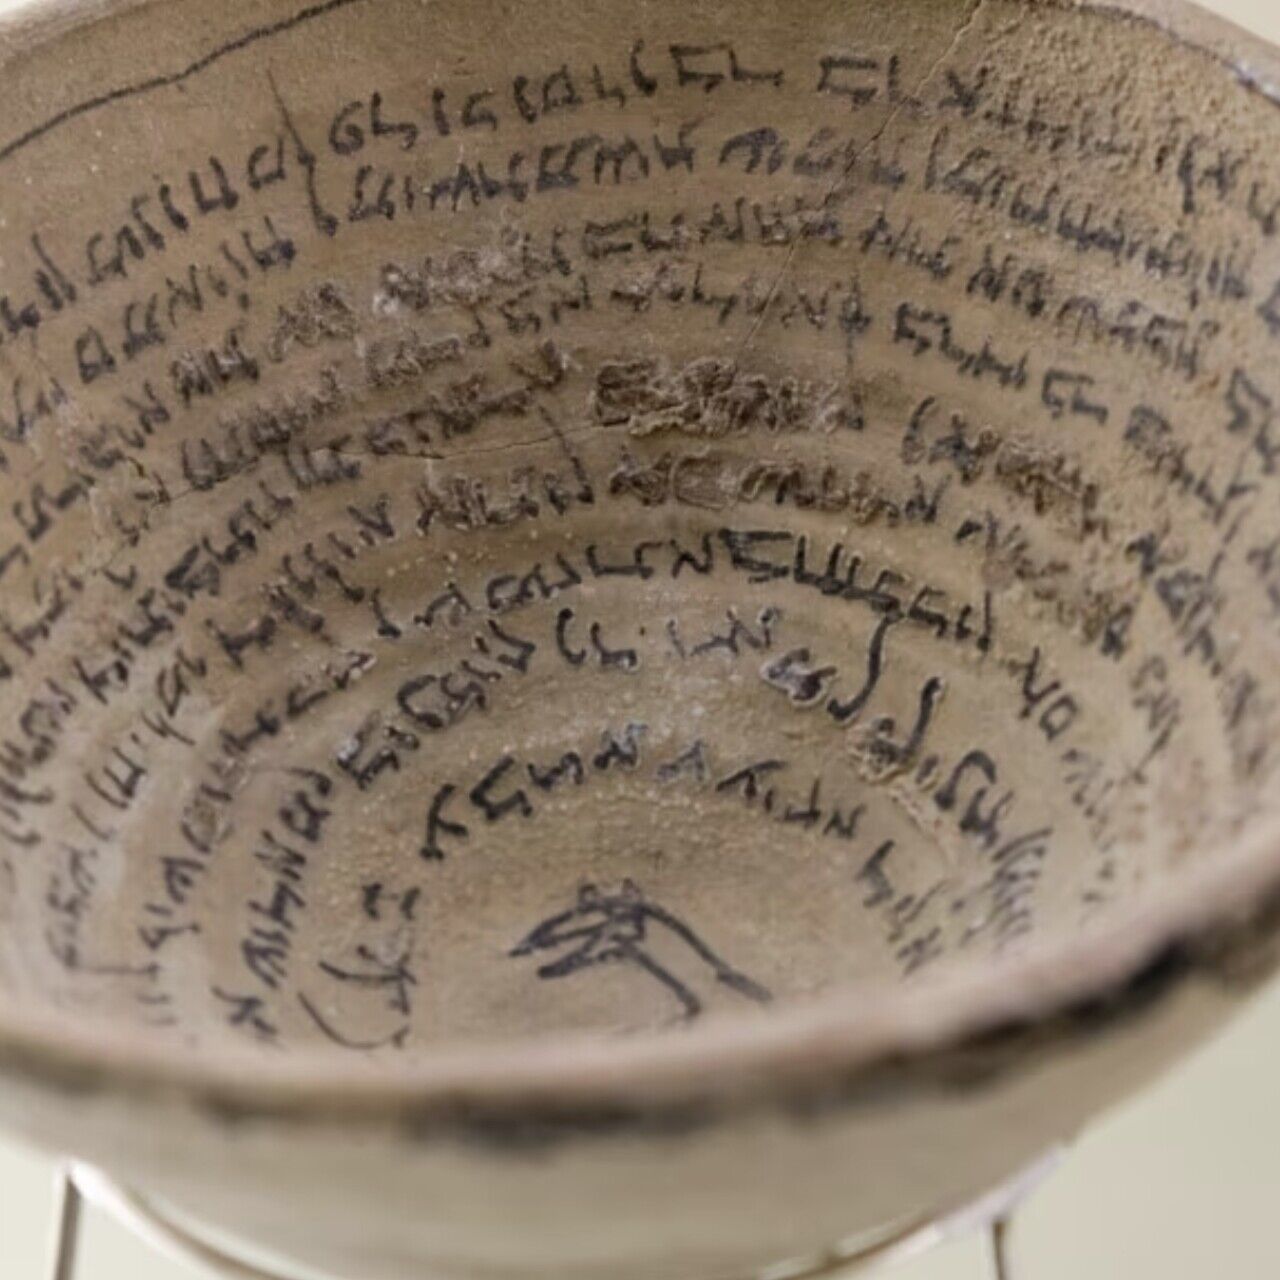 Cuneiforme: Uma representação da escrita cuneiforme em um vaso acadiano